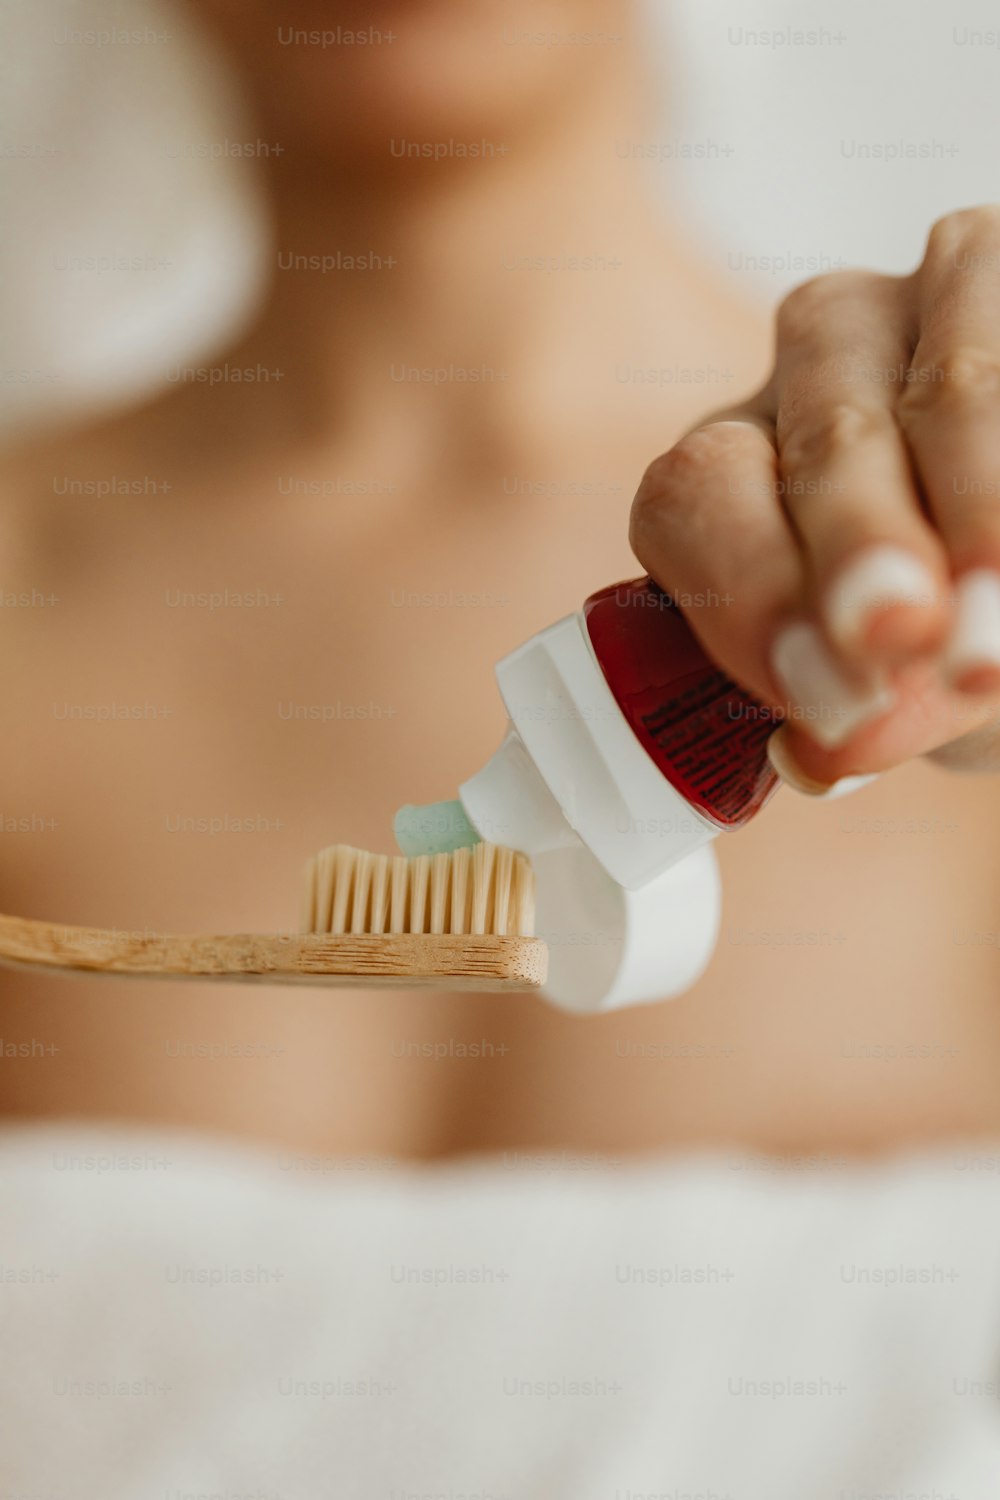 un gros plan d’une personne tenant une brosse à dents